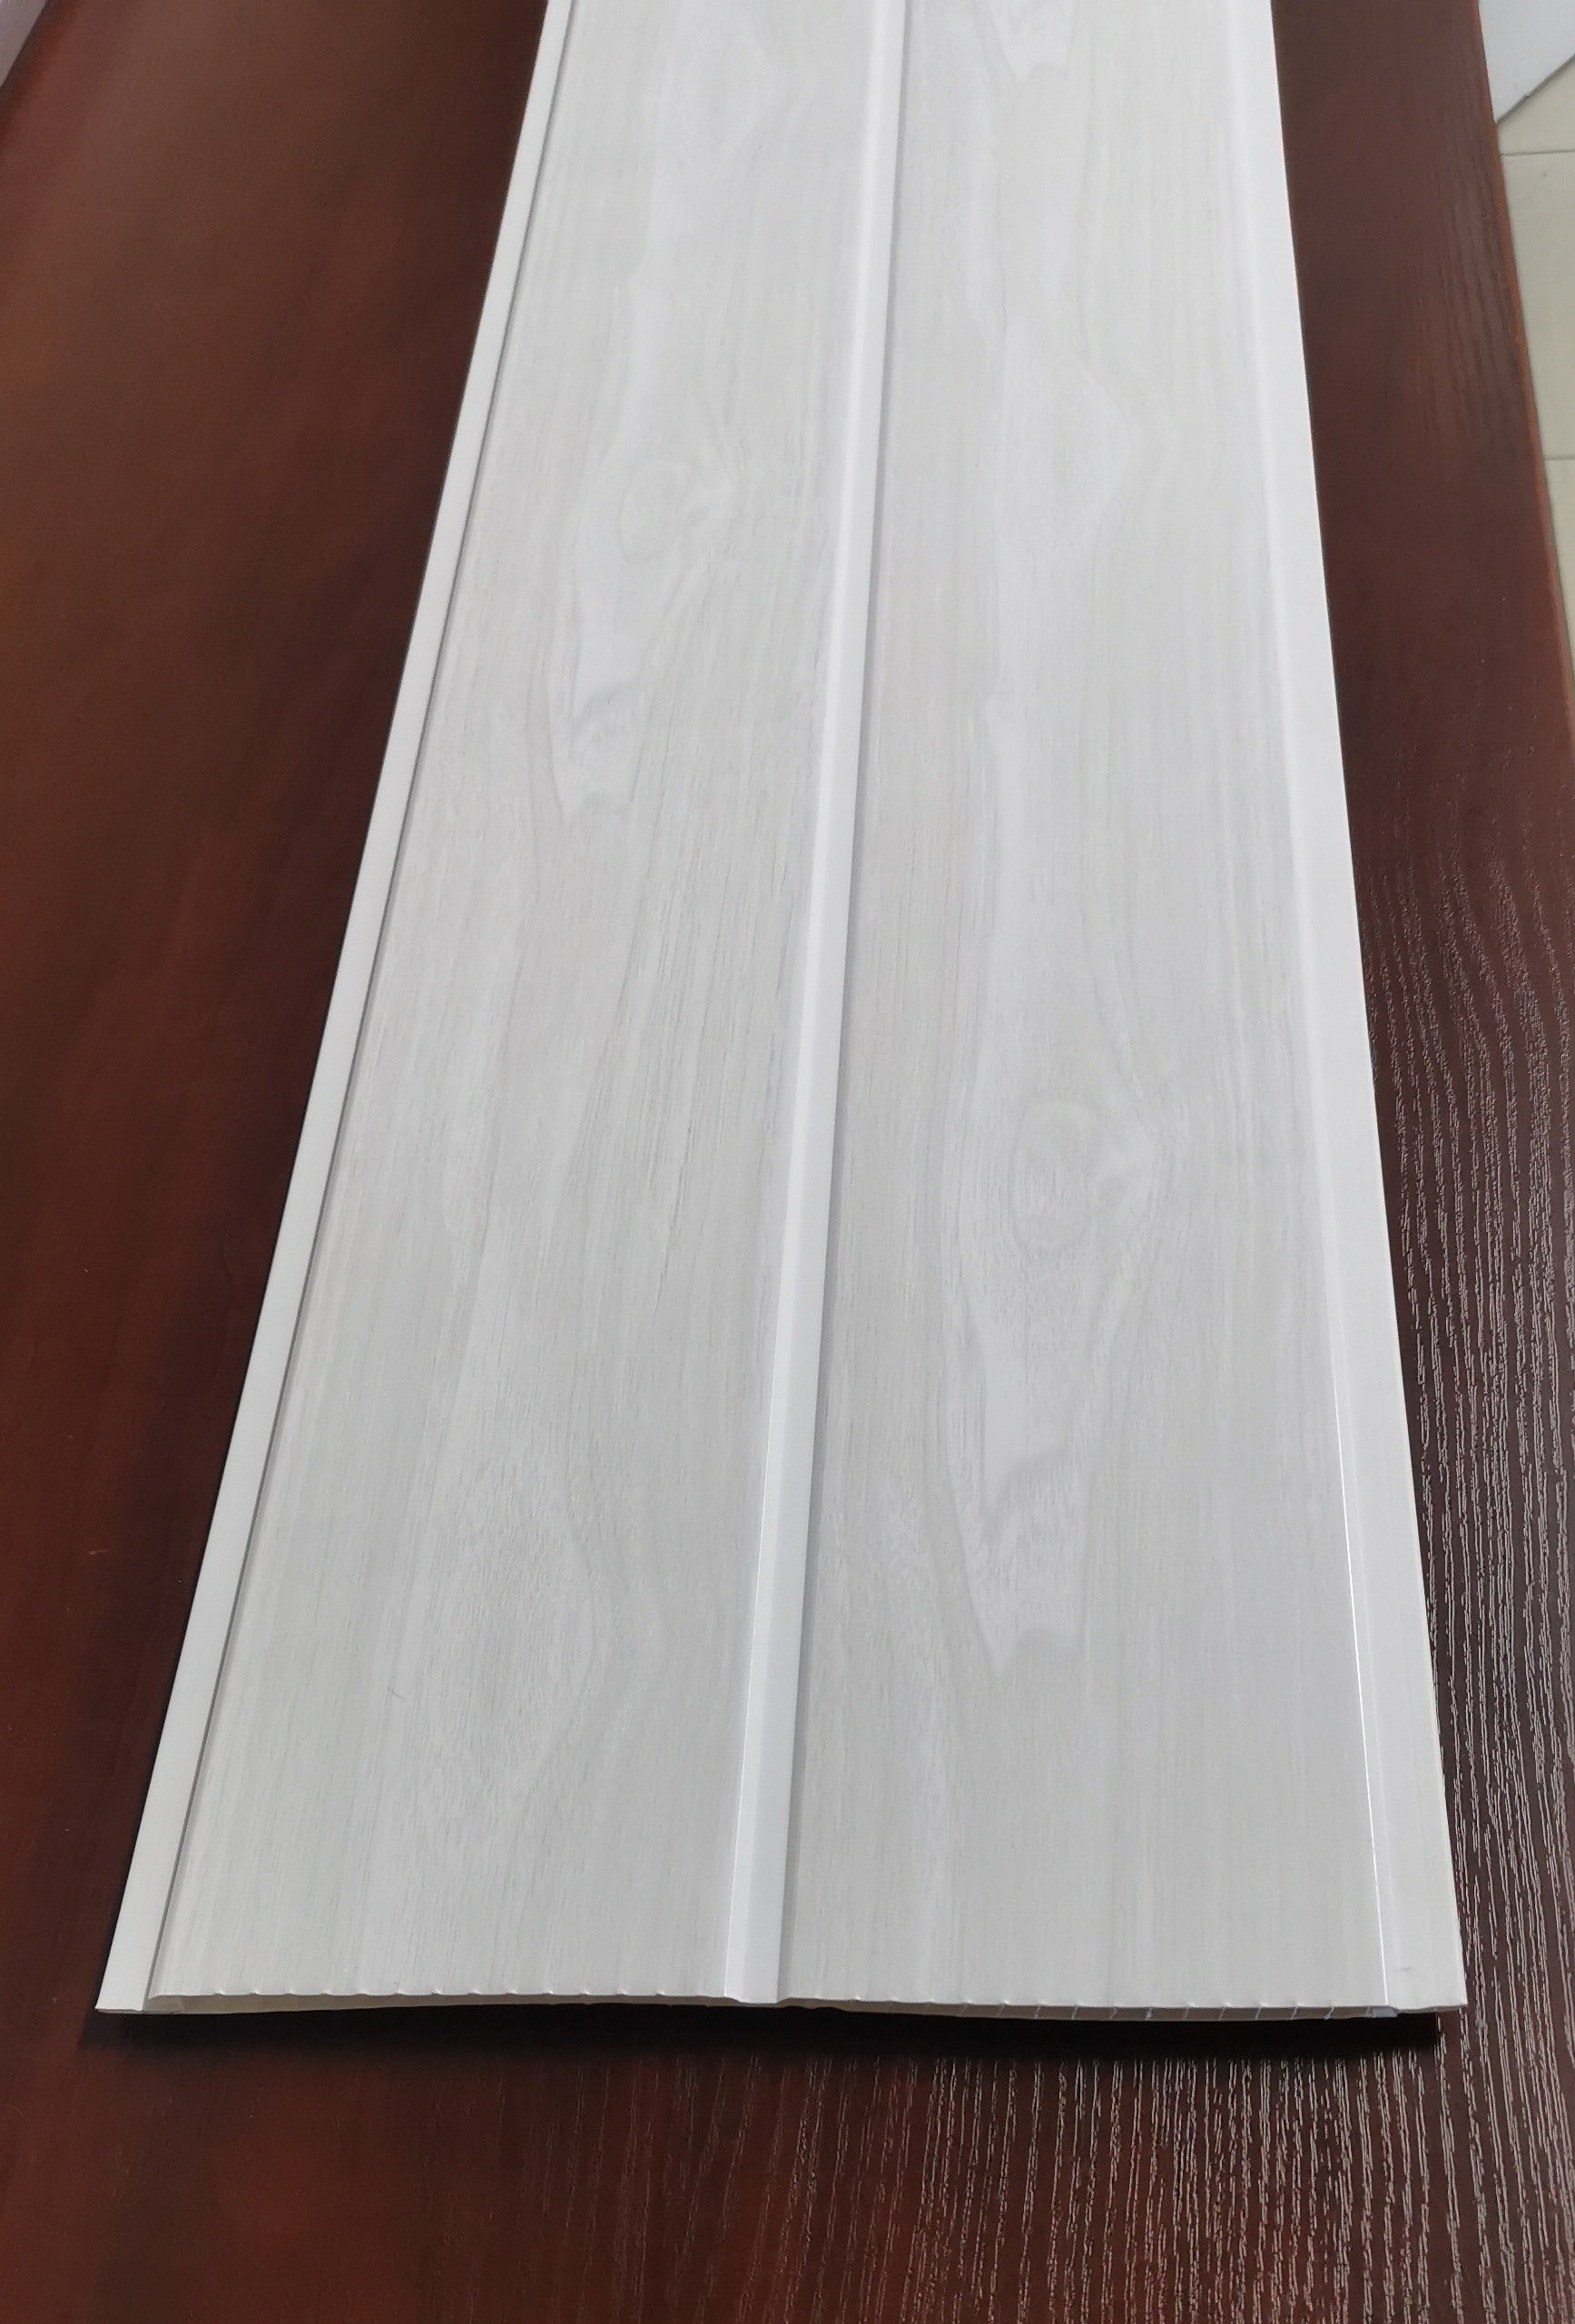 Light wood grain (25C31) PVC Ceiling Board grooved - Per Board